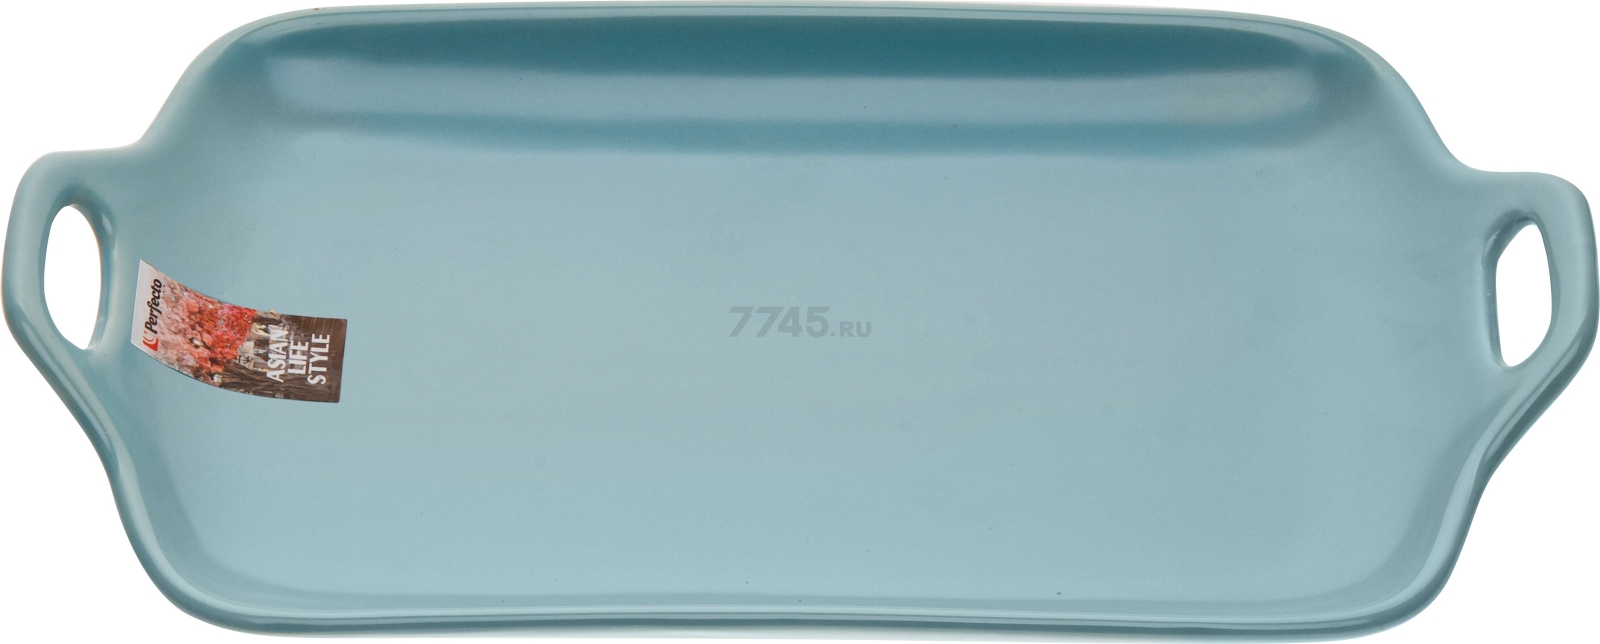 Блюдо керамическое прямоугольное PERFECTO LINEA Asian 29х17х4,5 см голубой (17-102902)